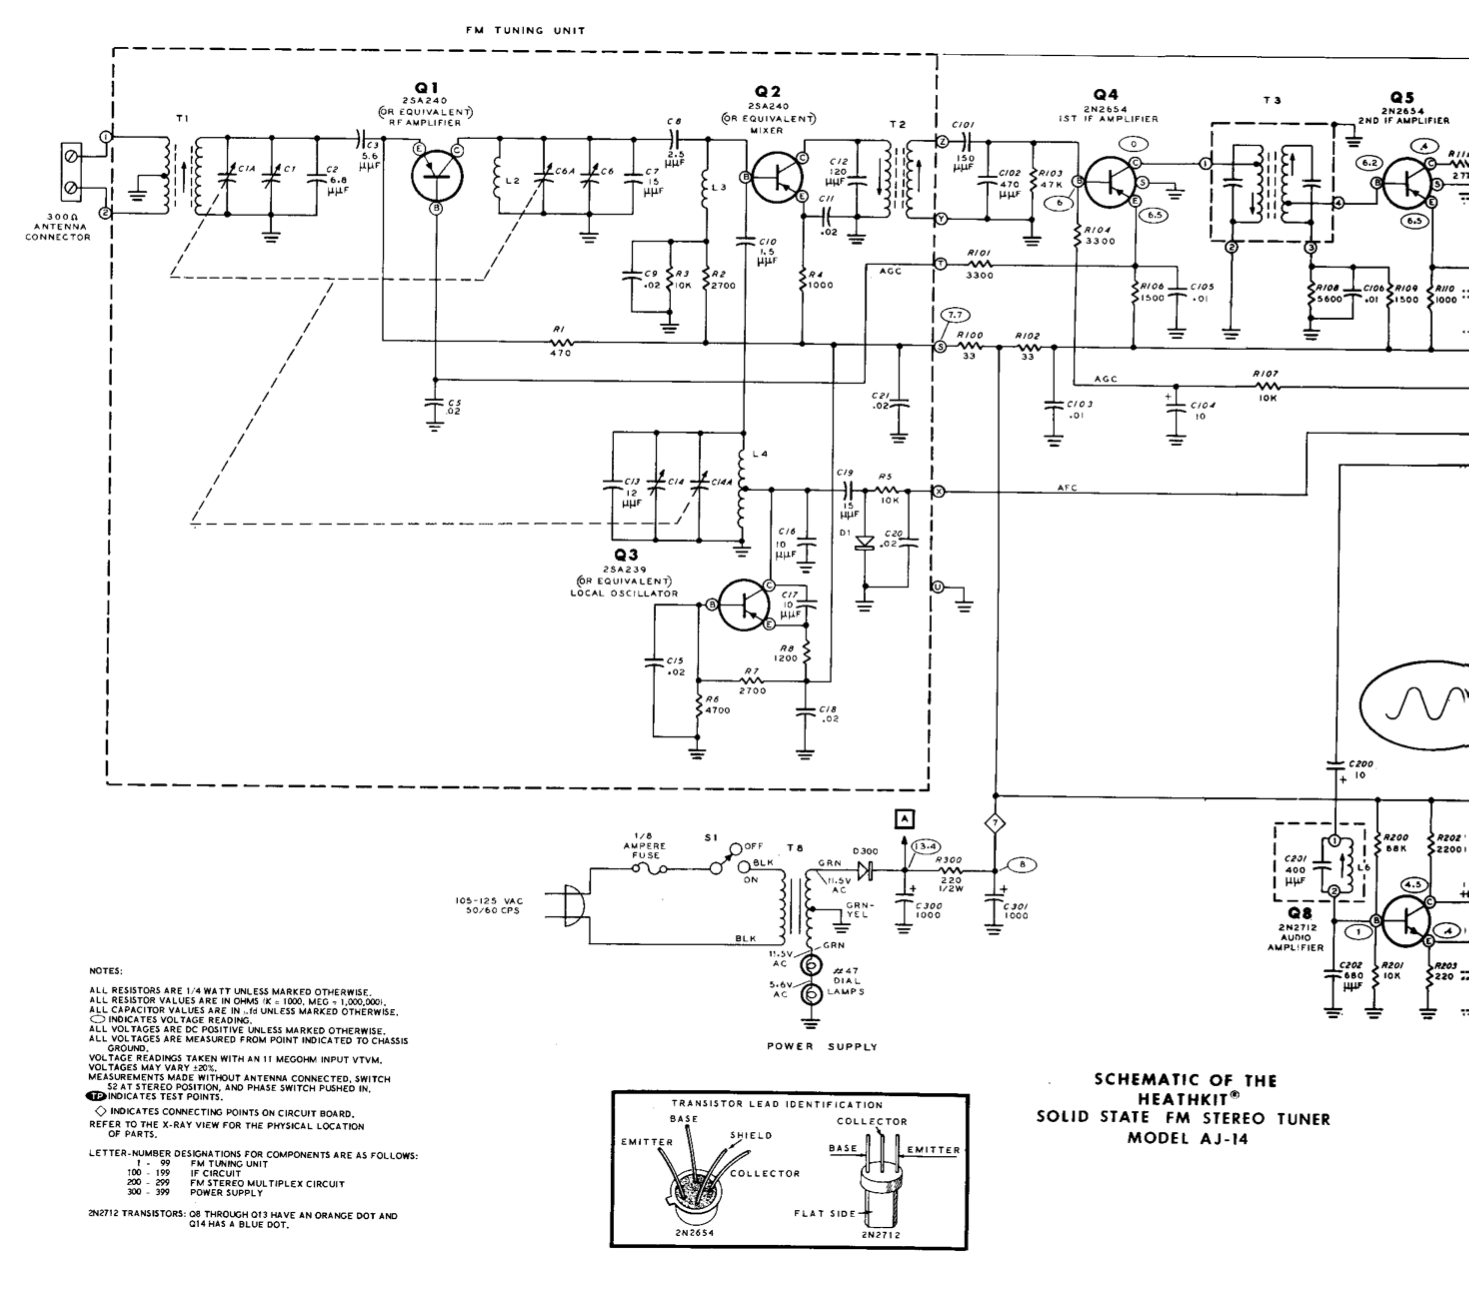 Heathkit AJ-14 FM Stereo Tuner - Schematic Diagrams